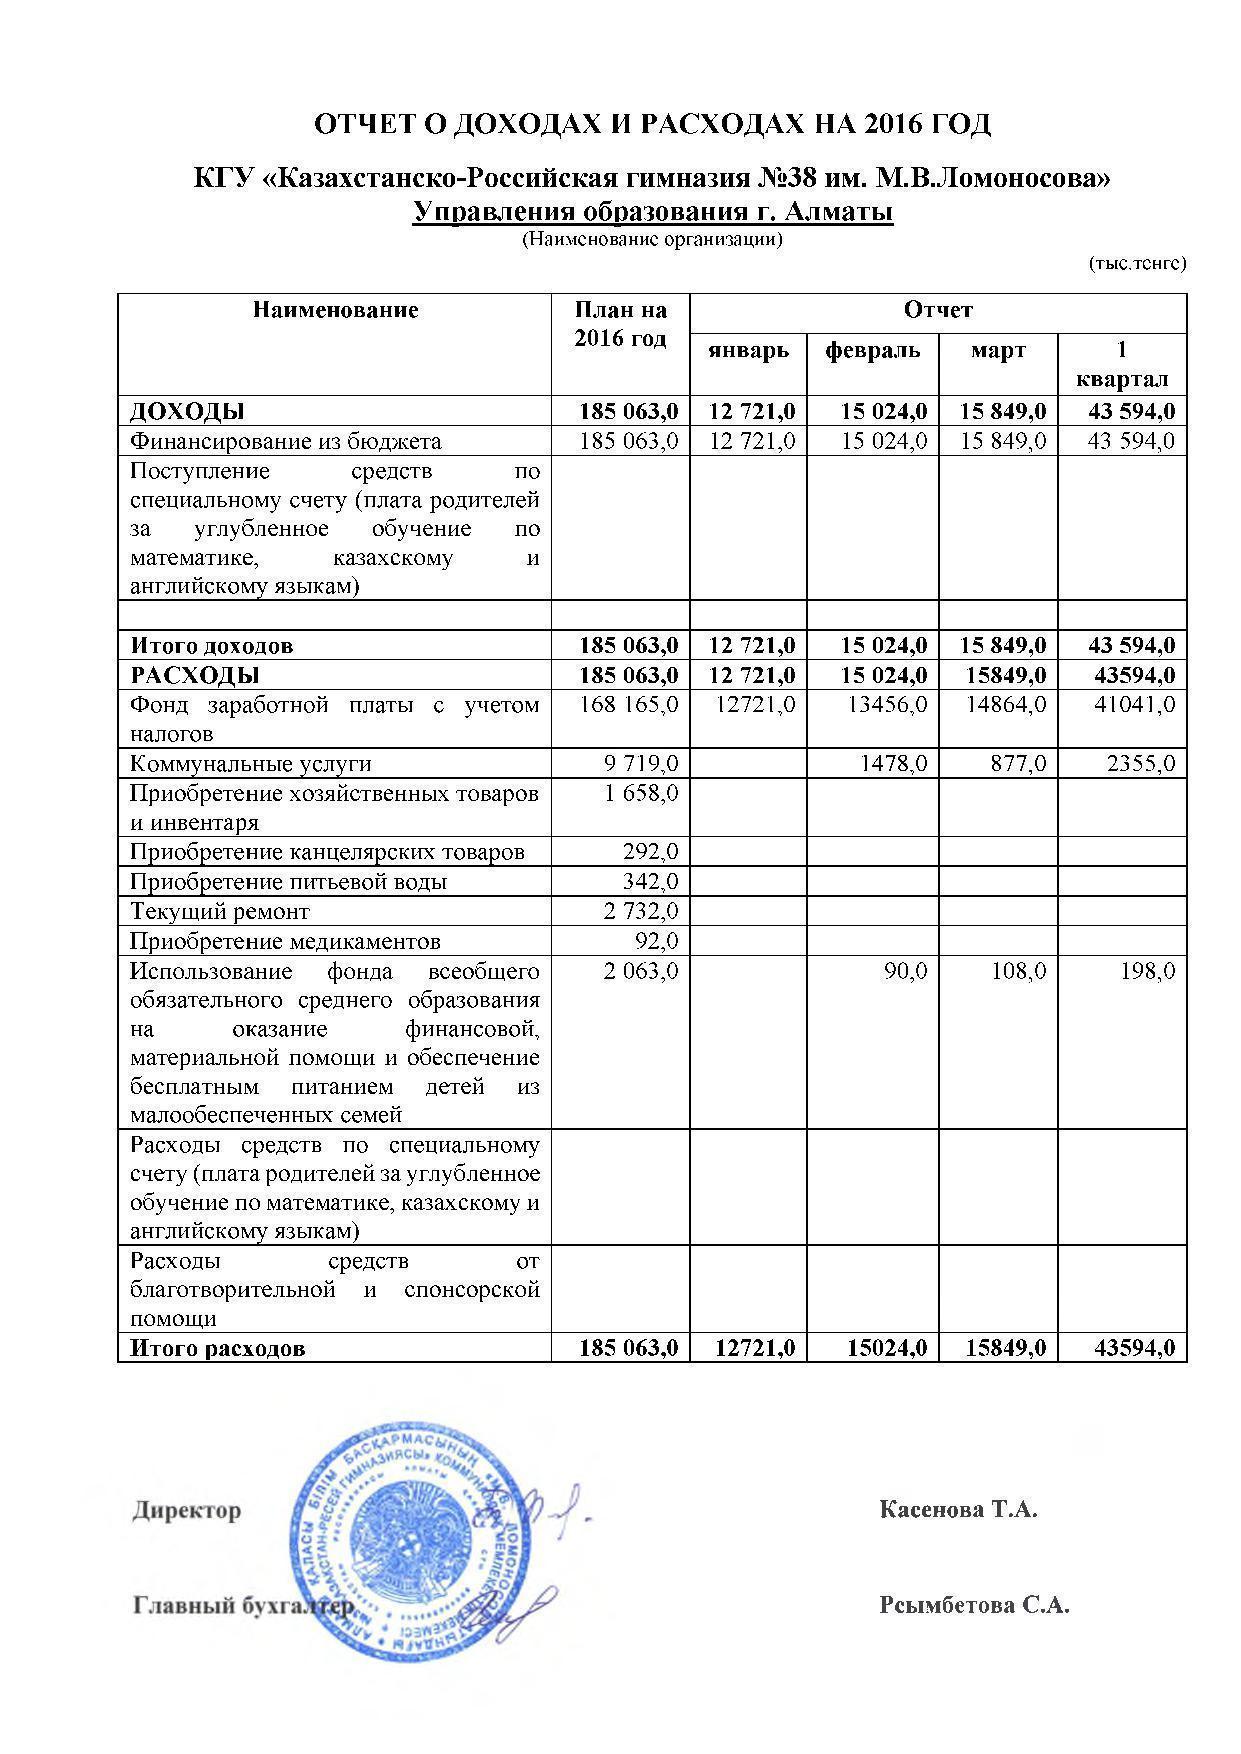 Statement of income and expenses за 1 квартал 2016 и пояснительная записка